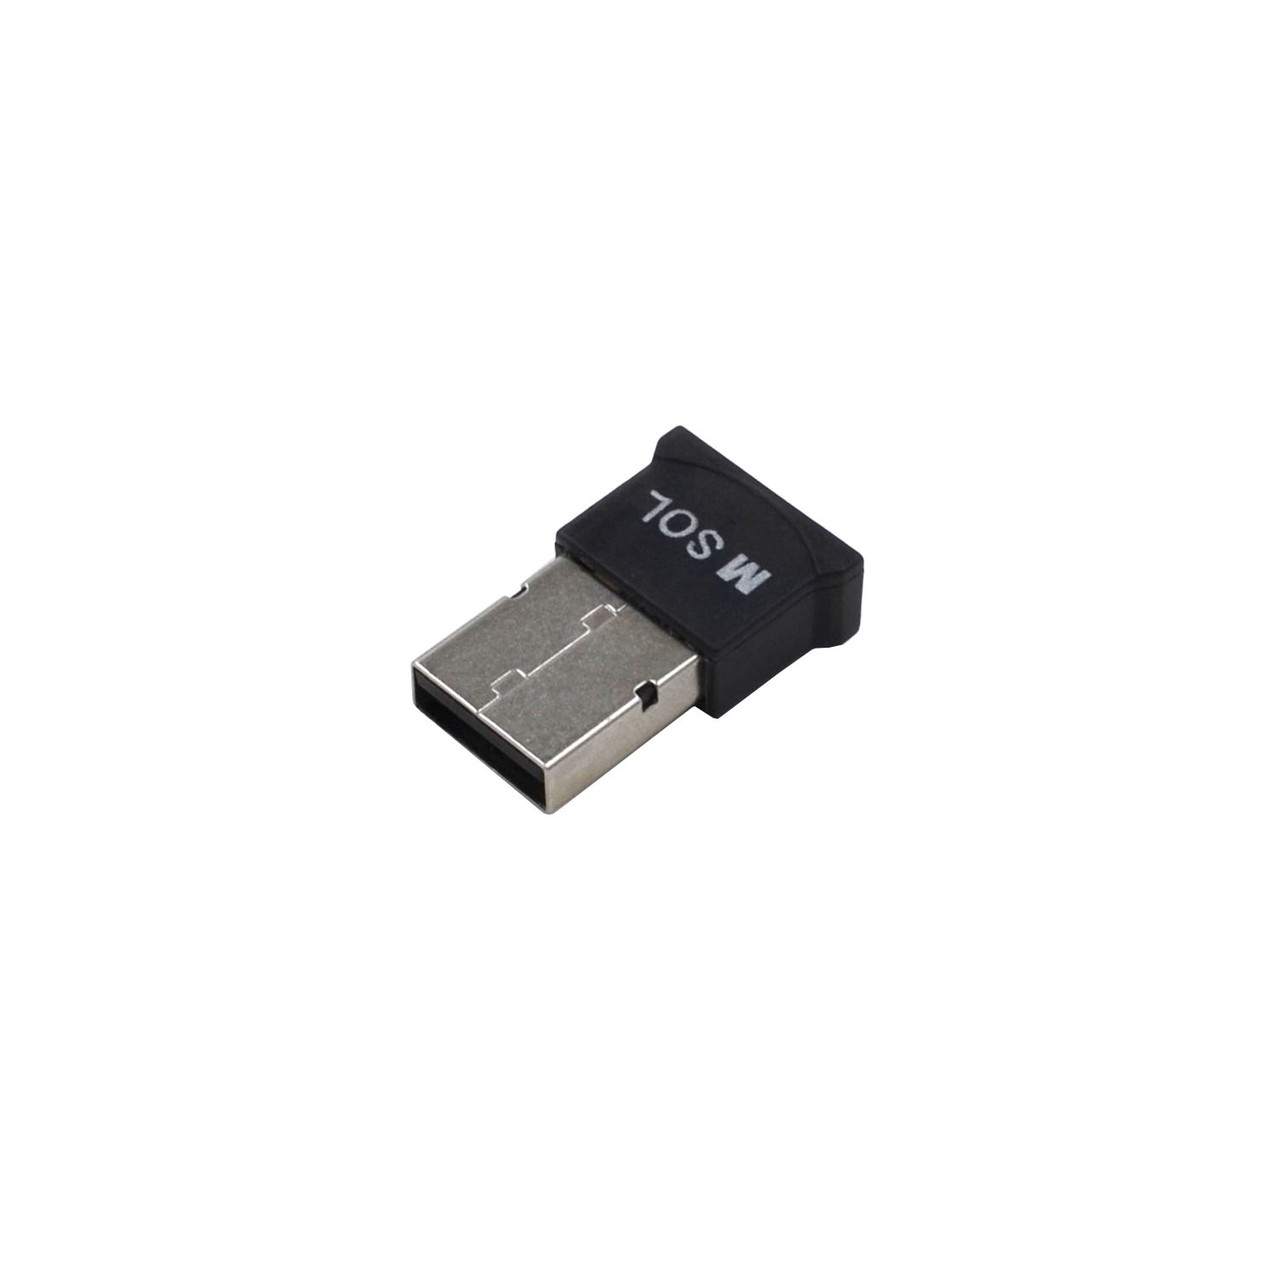 BLUETOOCH 5.0 USB адаптер M-Sol